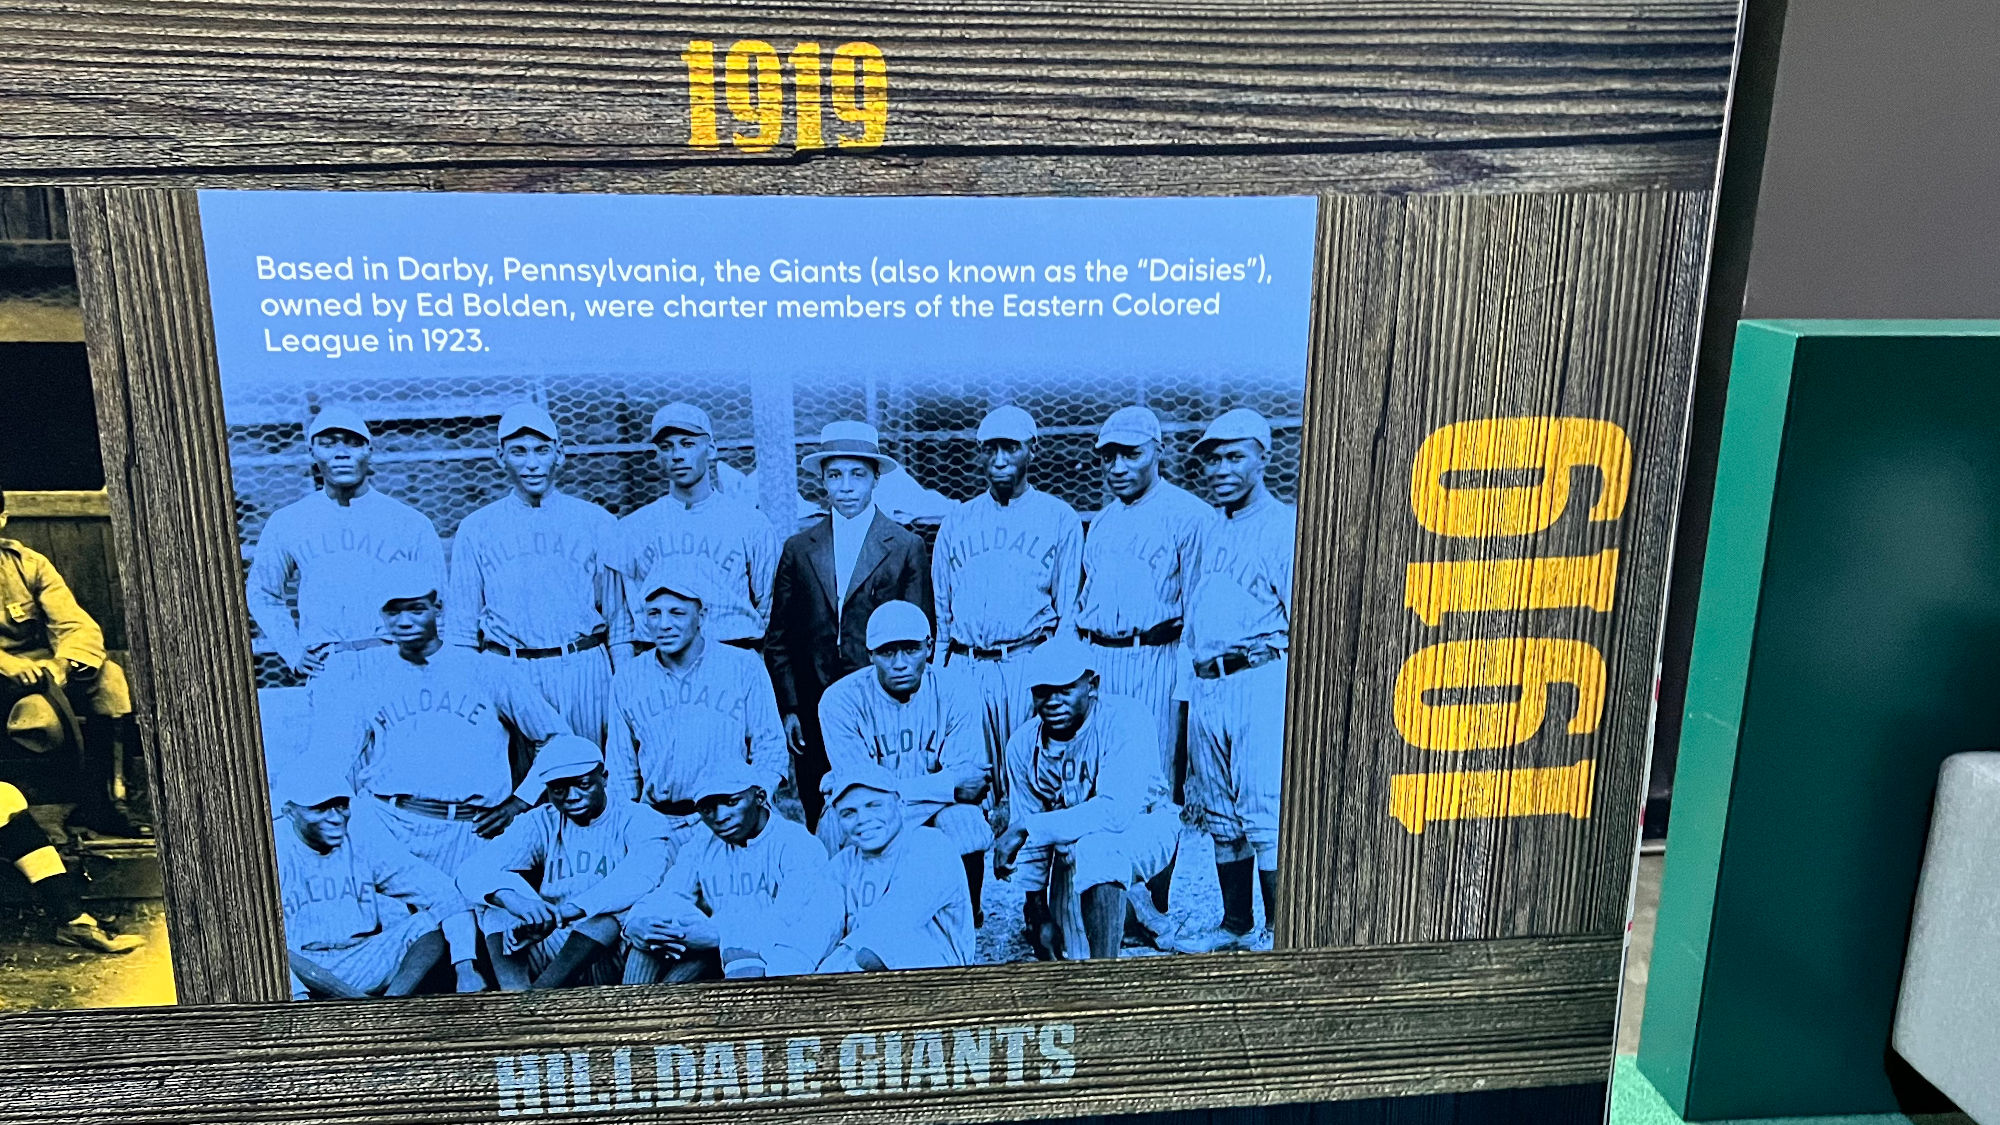 Negro Leagues Hilldale Giants